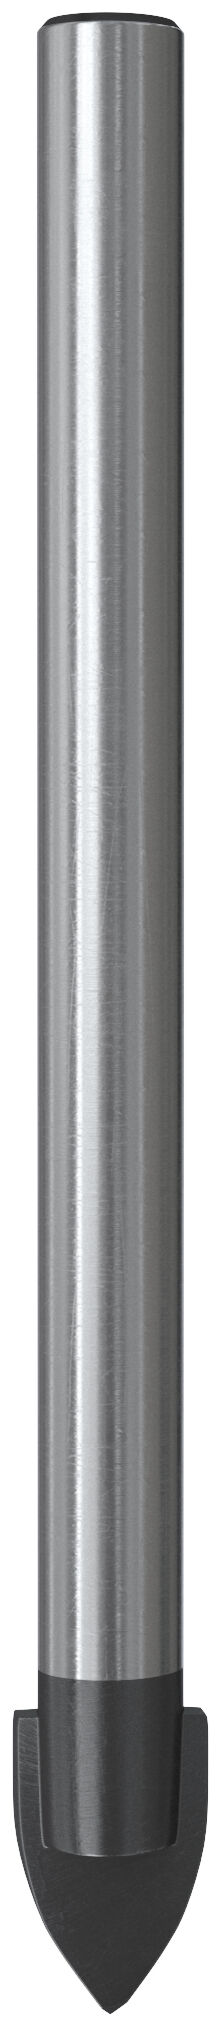 KANGO SDS PLUS 18mm Masonry Drill Bit 450mm 2 Cut Head German made K2P18450B 